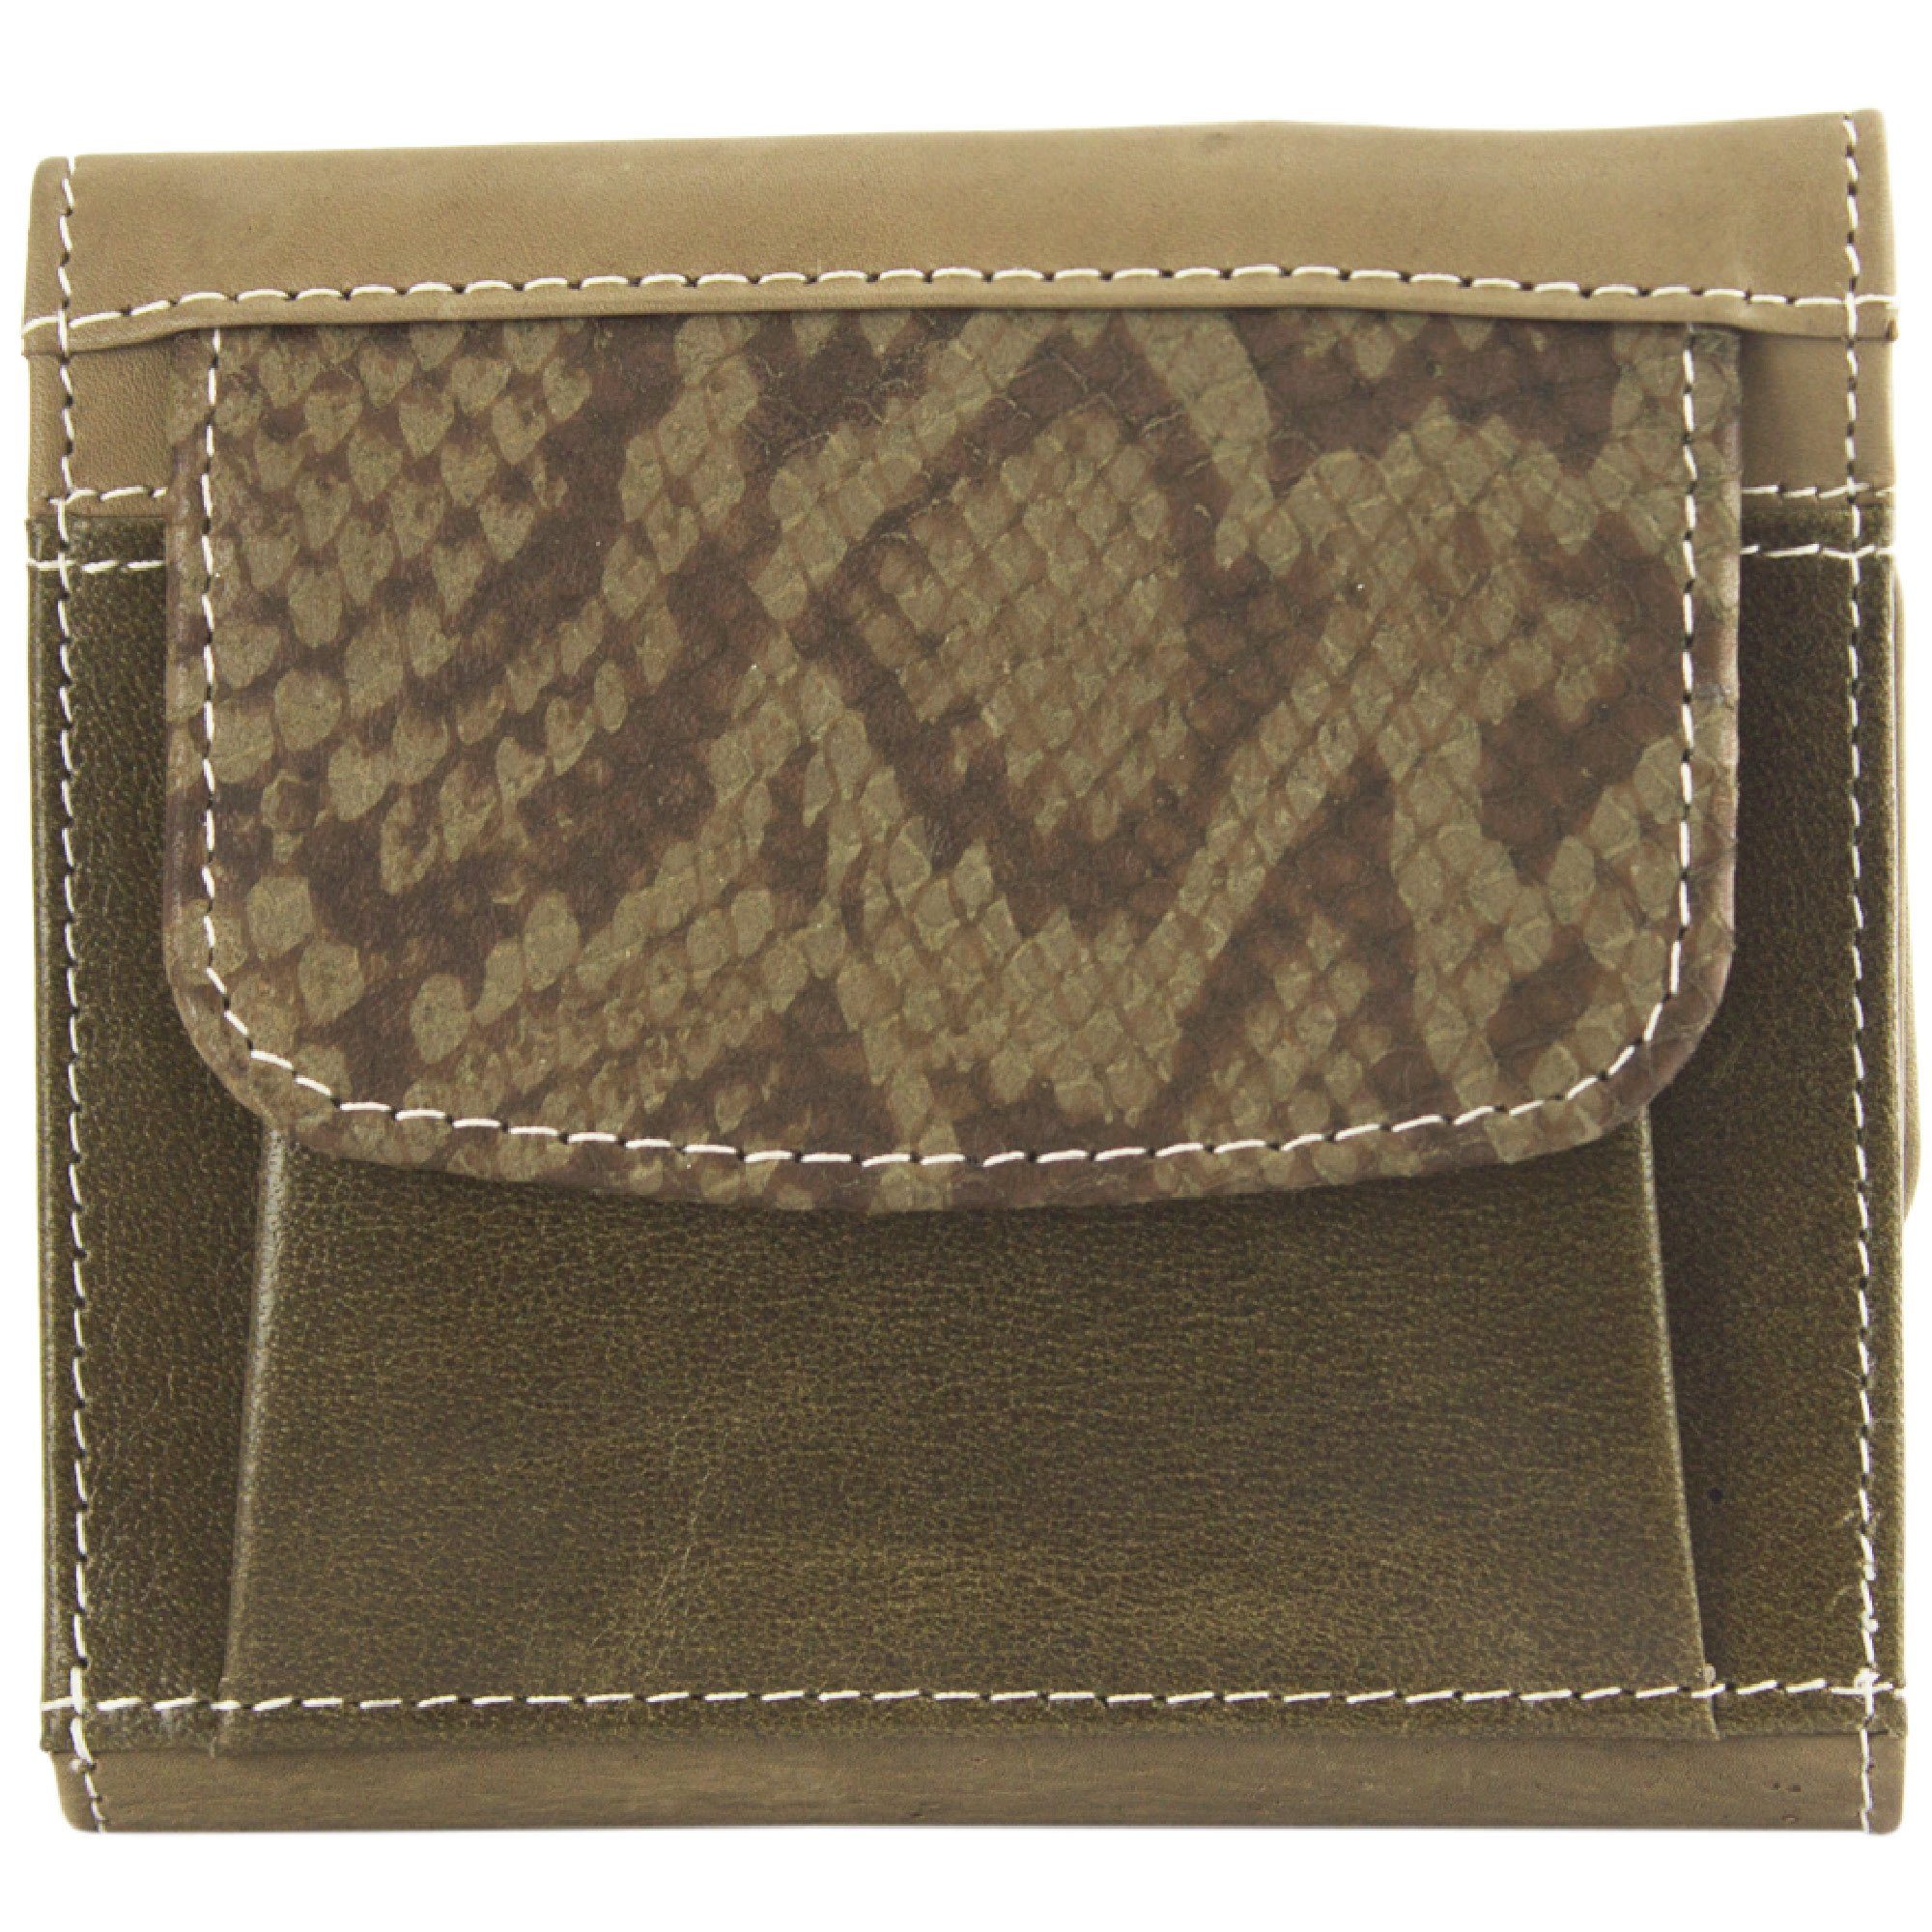 Sunsa Geldbörse echt Leder Geldbeutel Portemonnaie Brieftasche klein Damen, echt Leder, aus recycelten Lederresten, mit RFID-Schutz, Unisex dunkelbraun